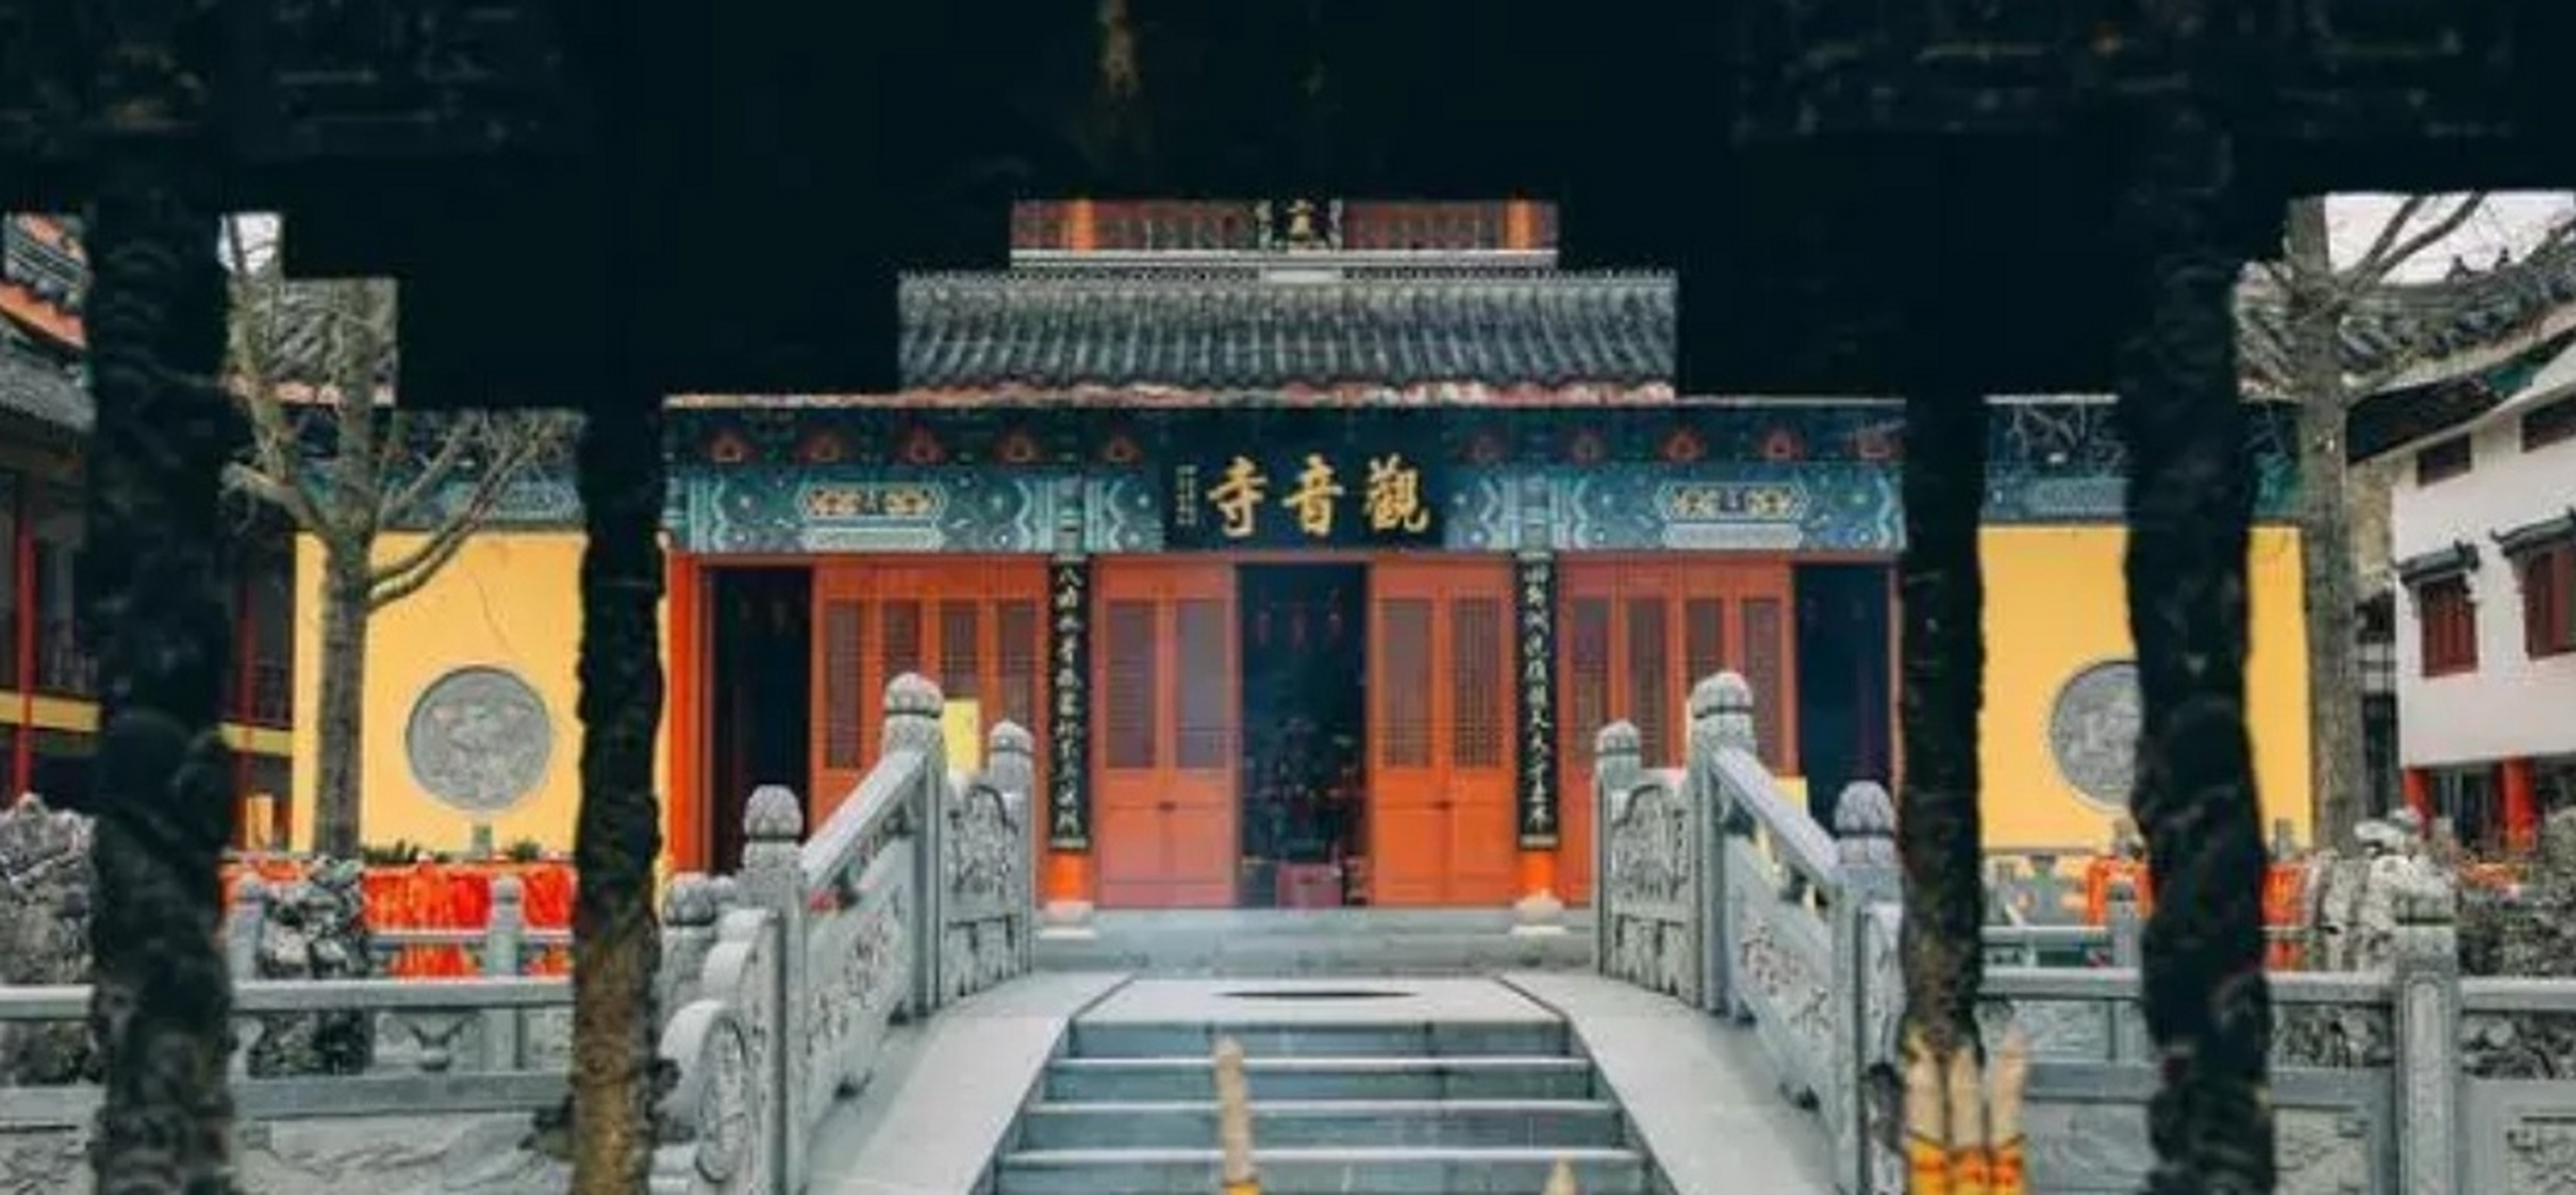 海宁大尖山观音庙位于大尖山顶峰,始建于雍正十三年,历史上香火旺盛